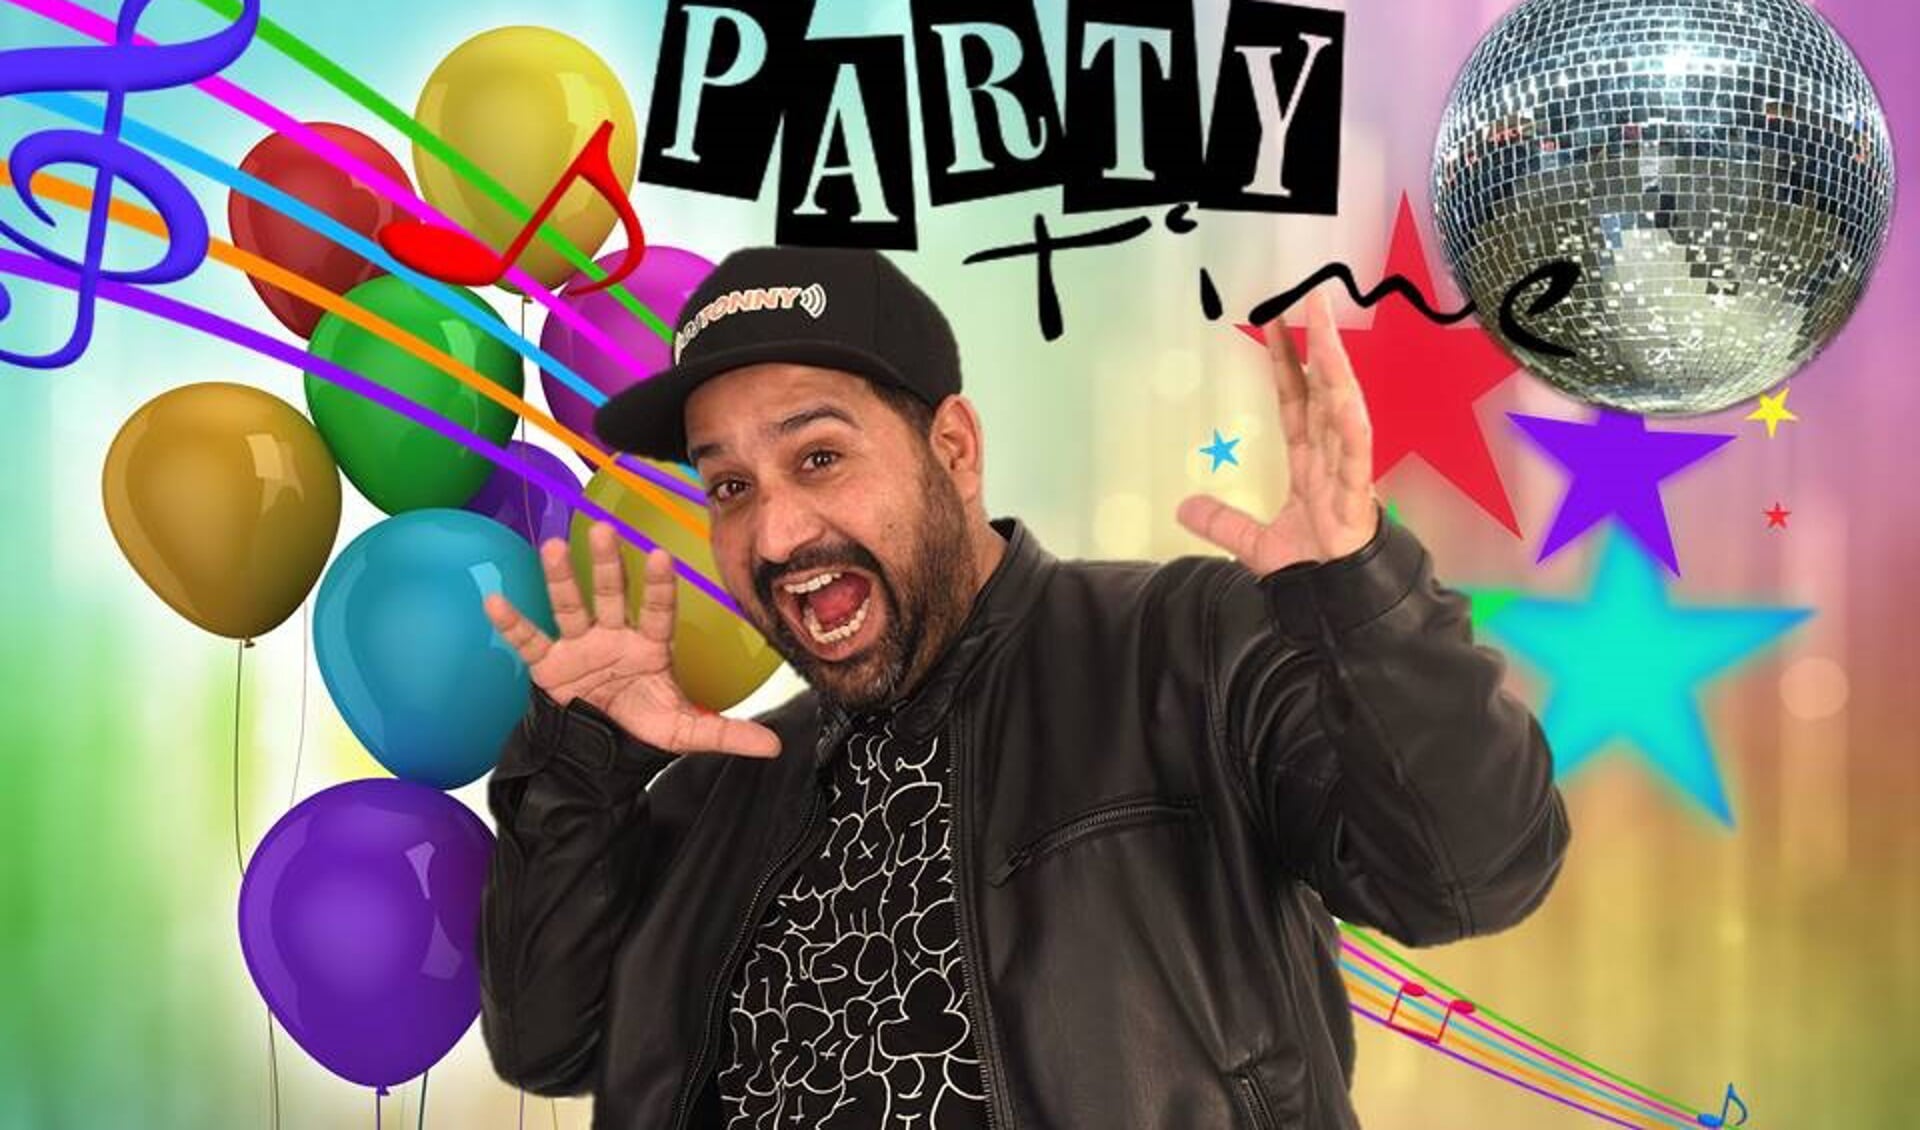 De Zeelandse DJ Tonny is genomineerd voor twee Party Awards